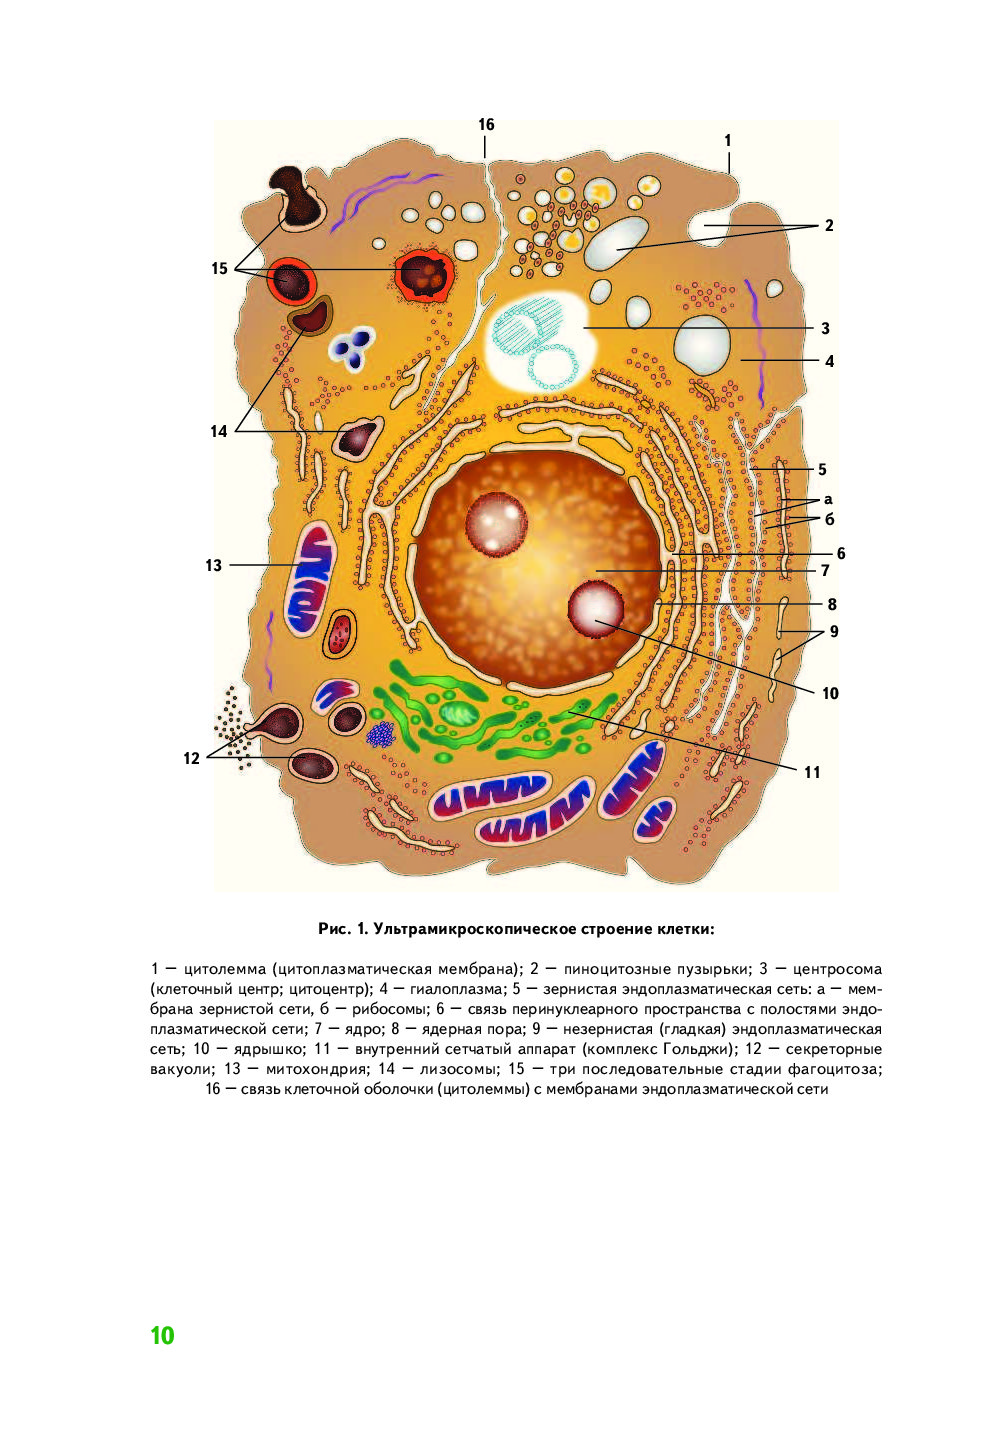 Схема ультрамикроскопического строения животной клетки